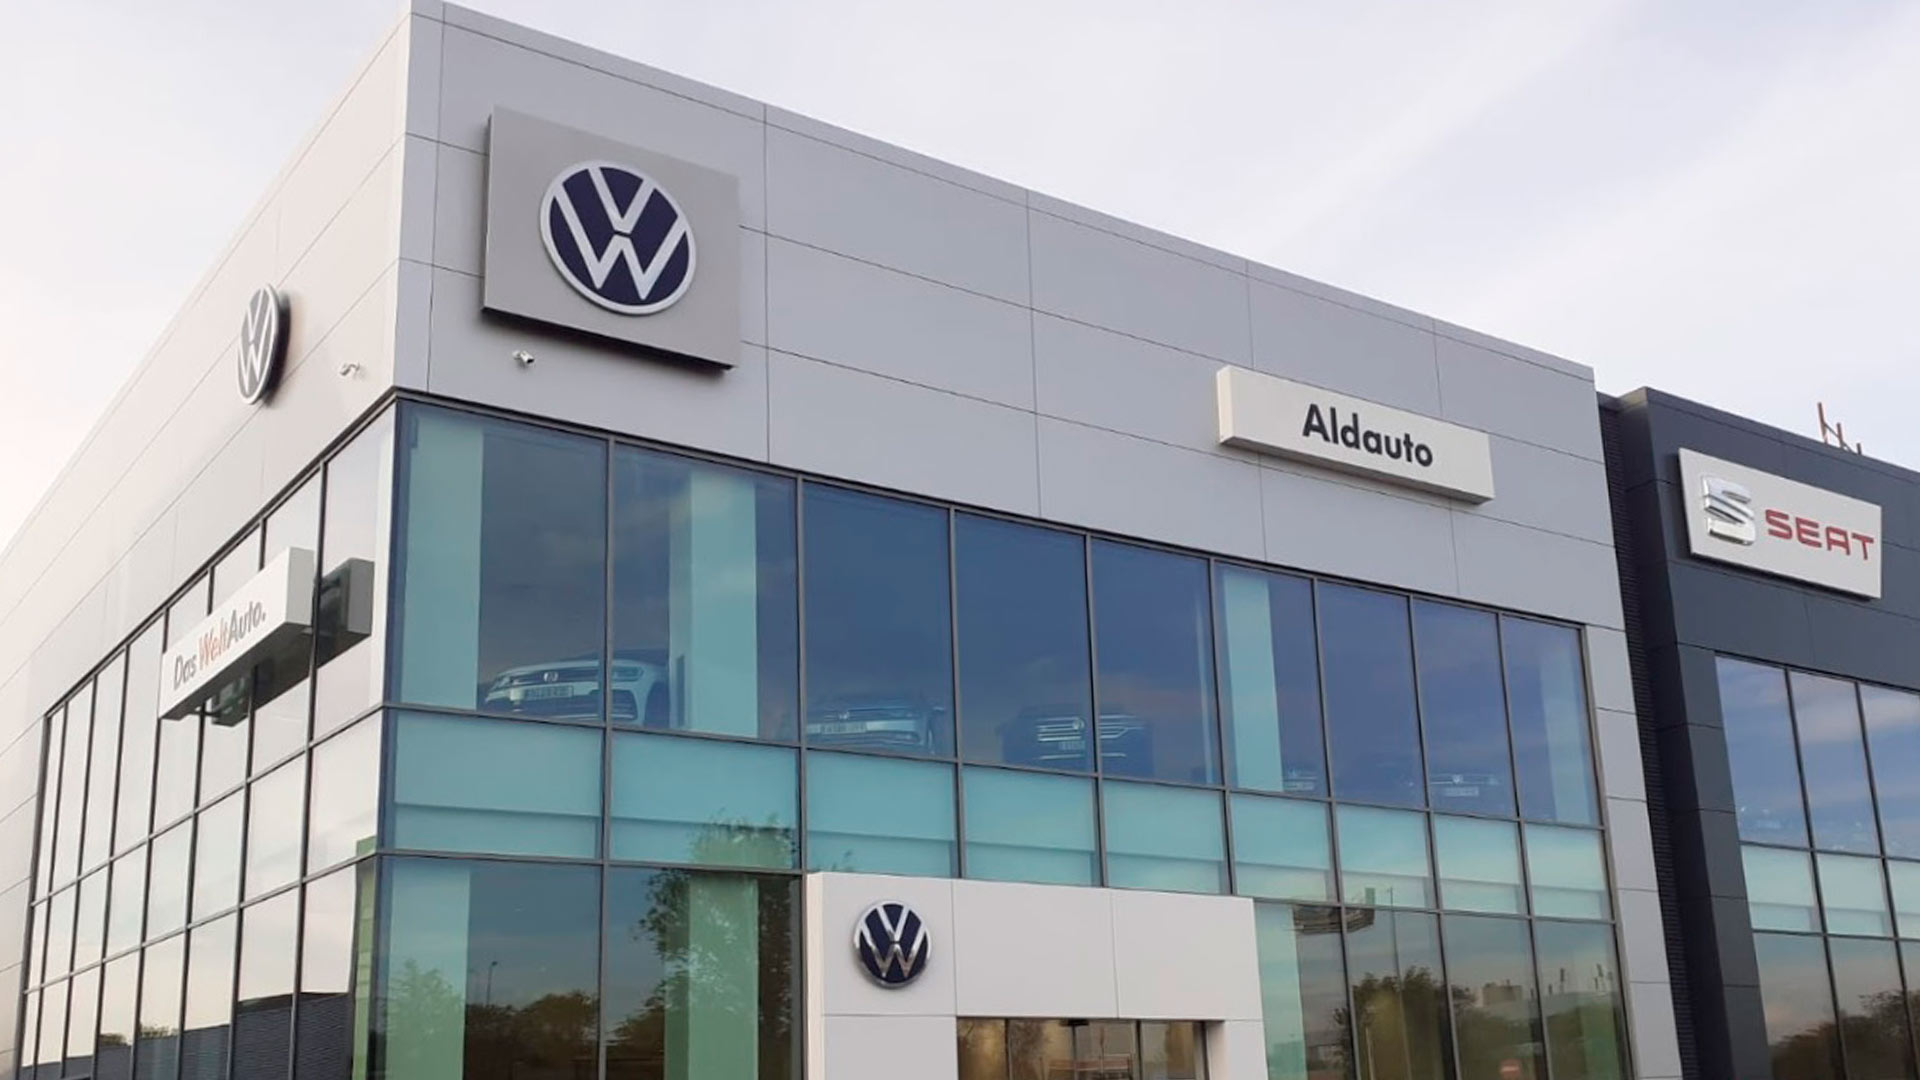 Nave industrial Volkswagen (fachada)